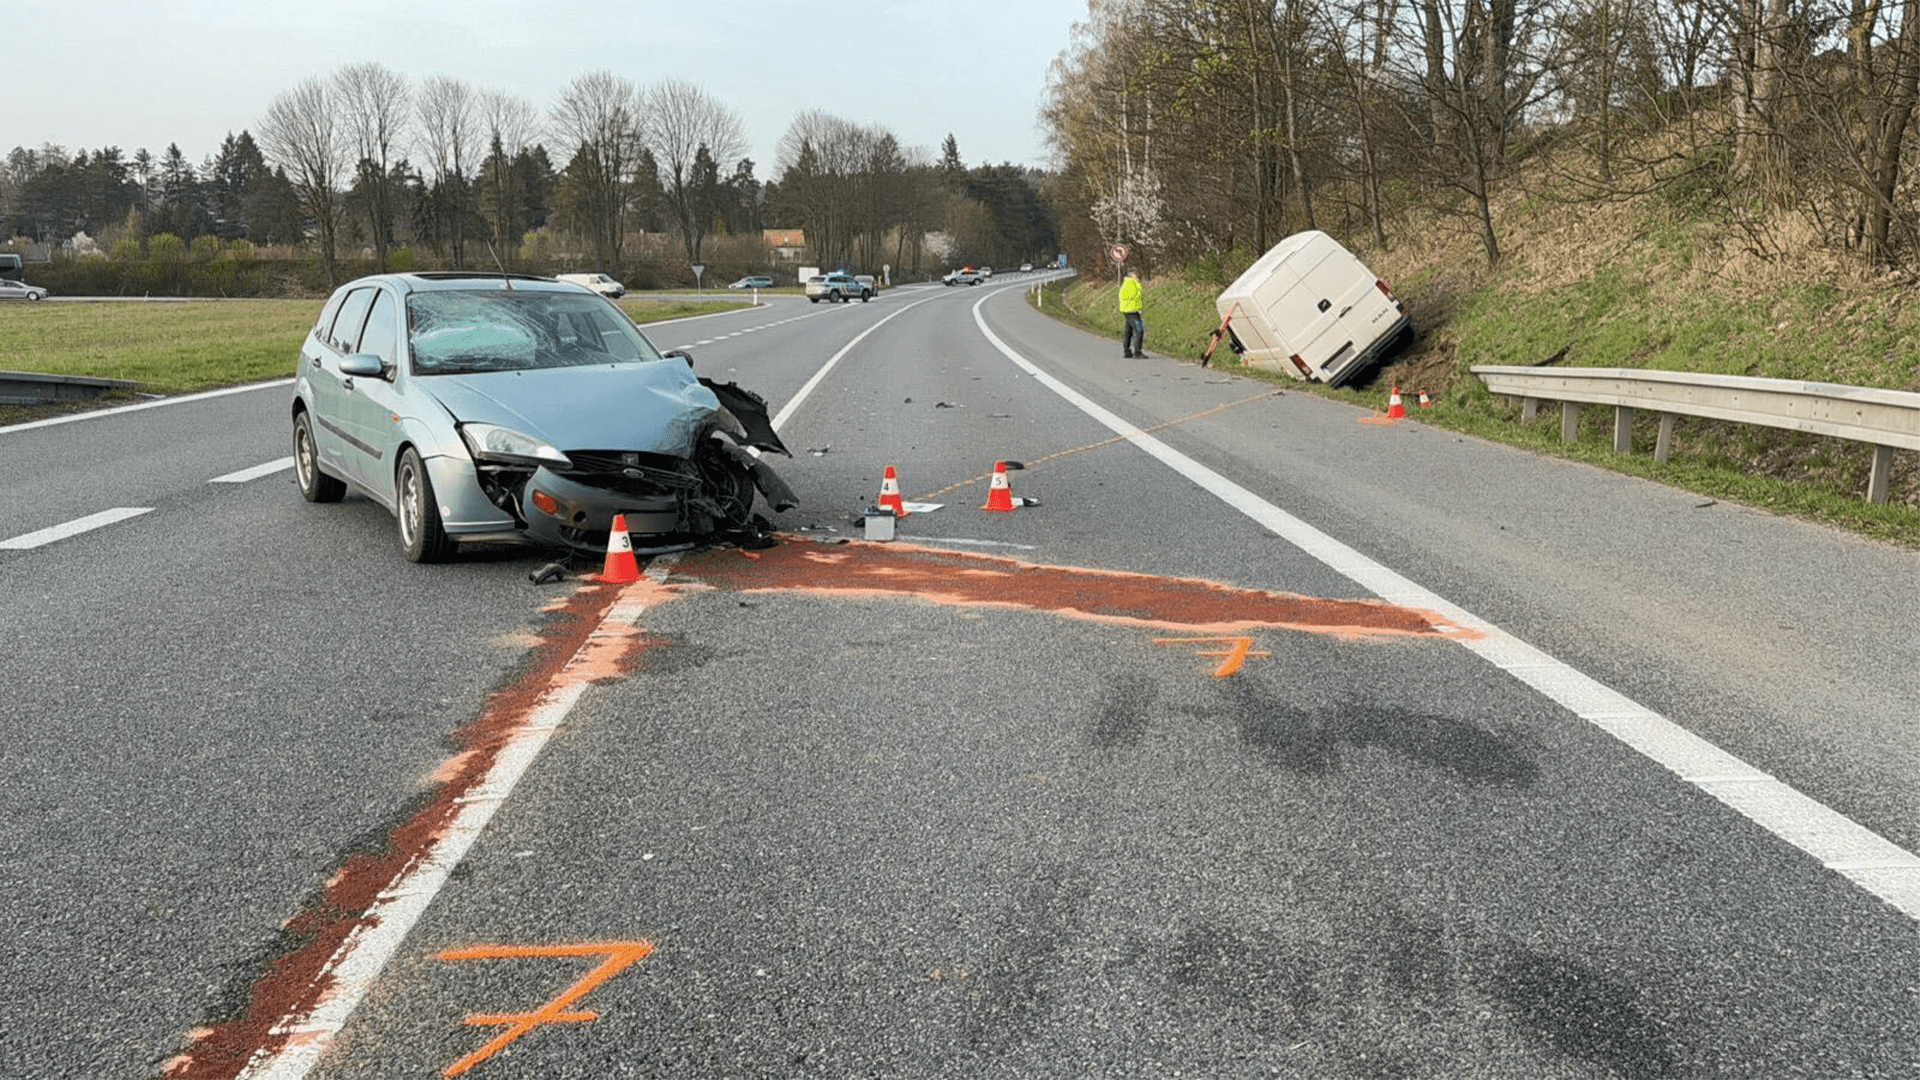 Vážná nehoda dodávky s osobním autem ze soboty 30. března